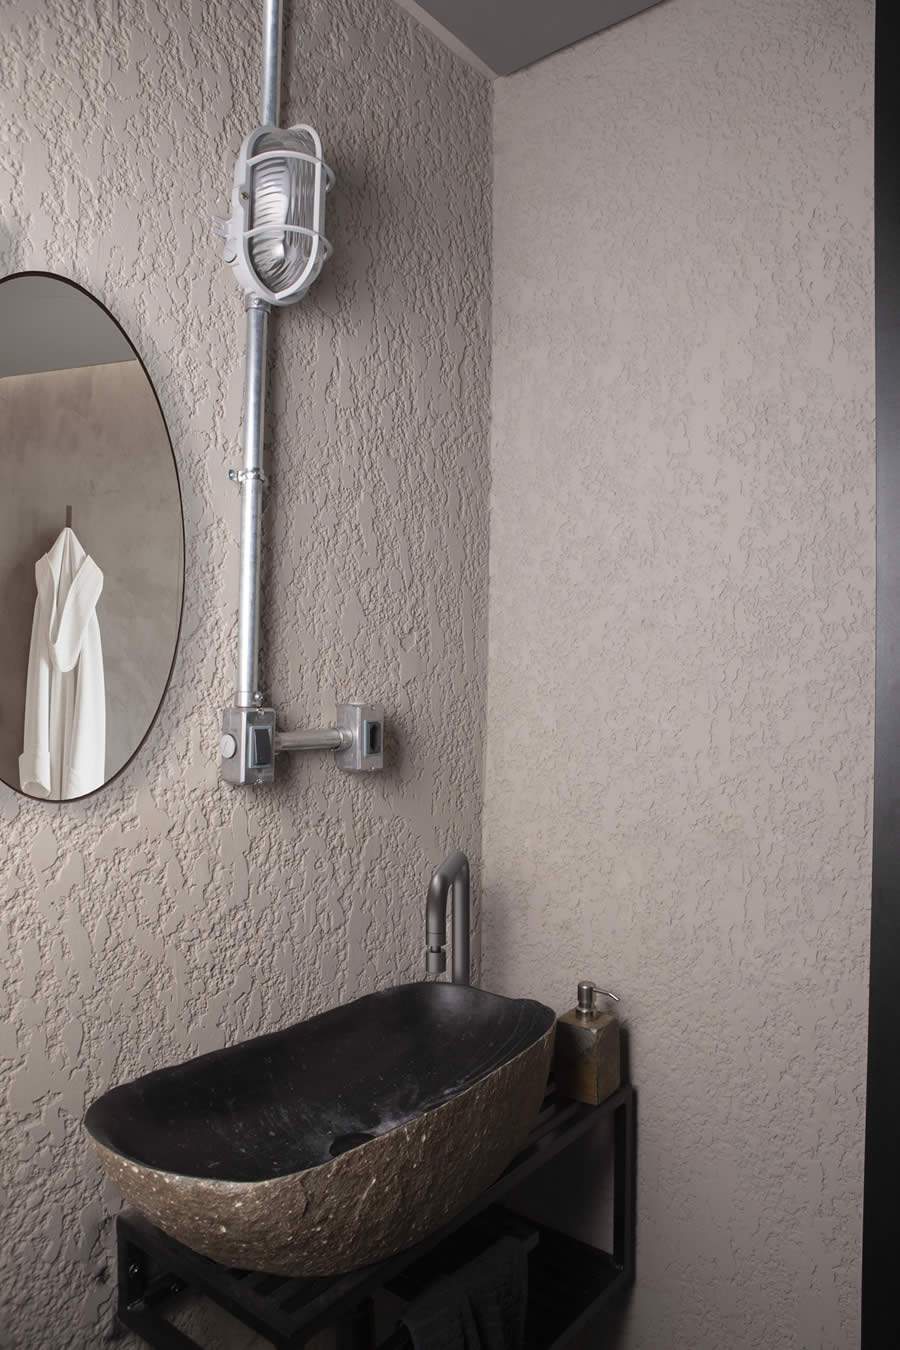 Instalação elétrica aparente em banheiros é fácil e contemporânea